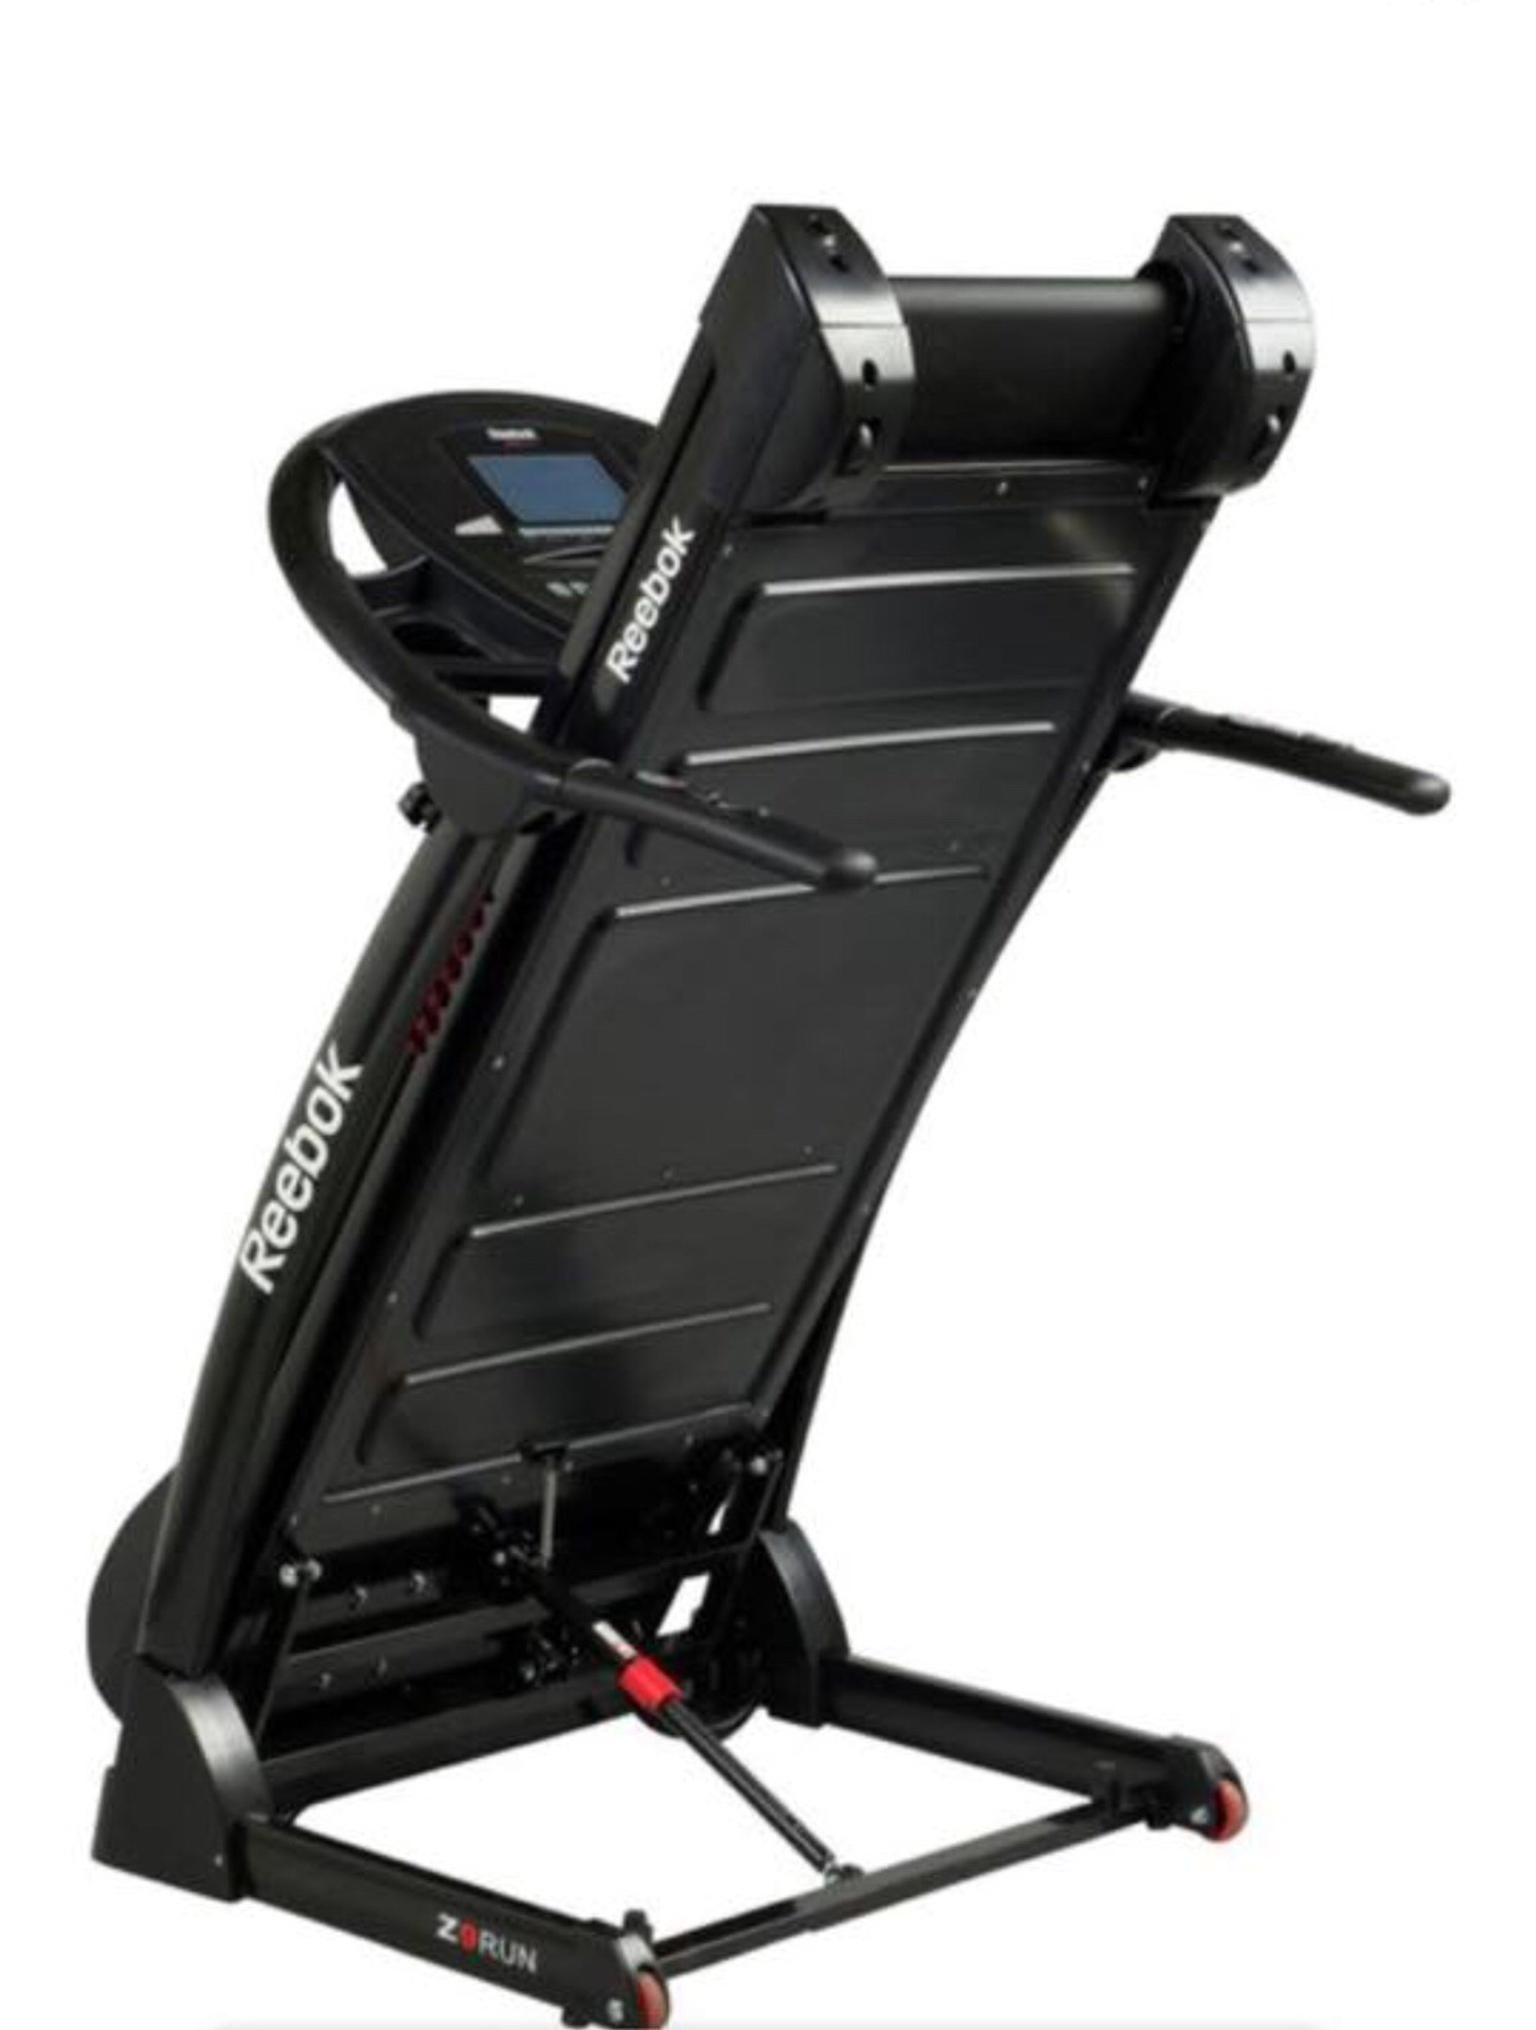 Reebok ZR9 Treadmill like new in NW2 